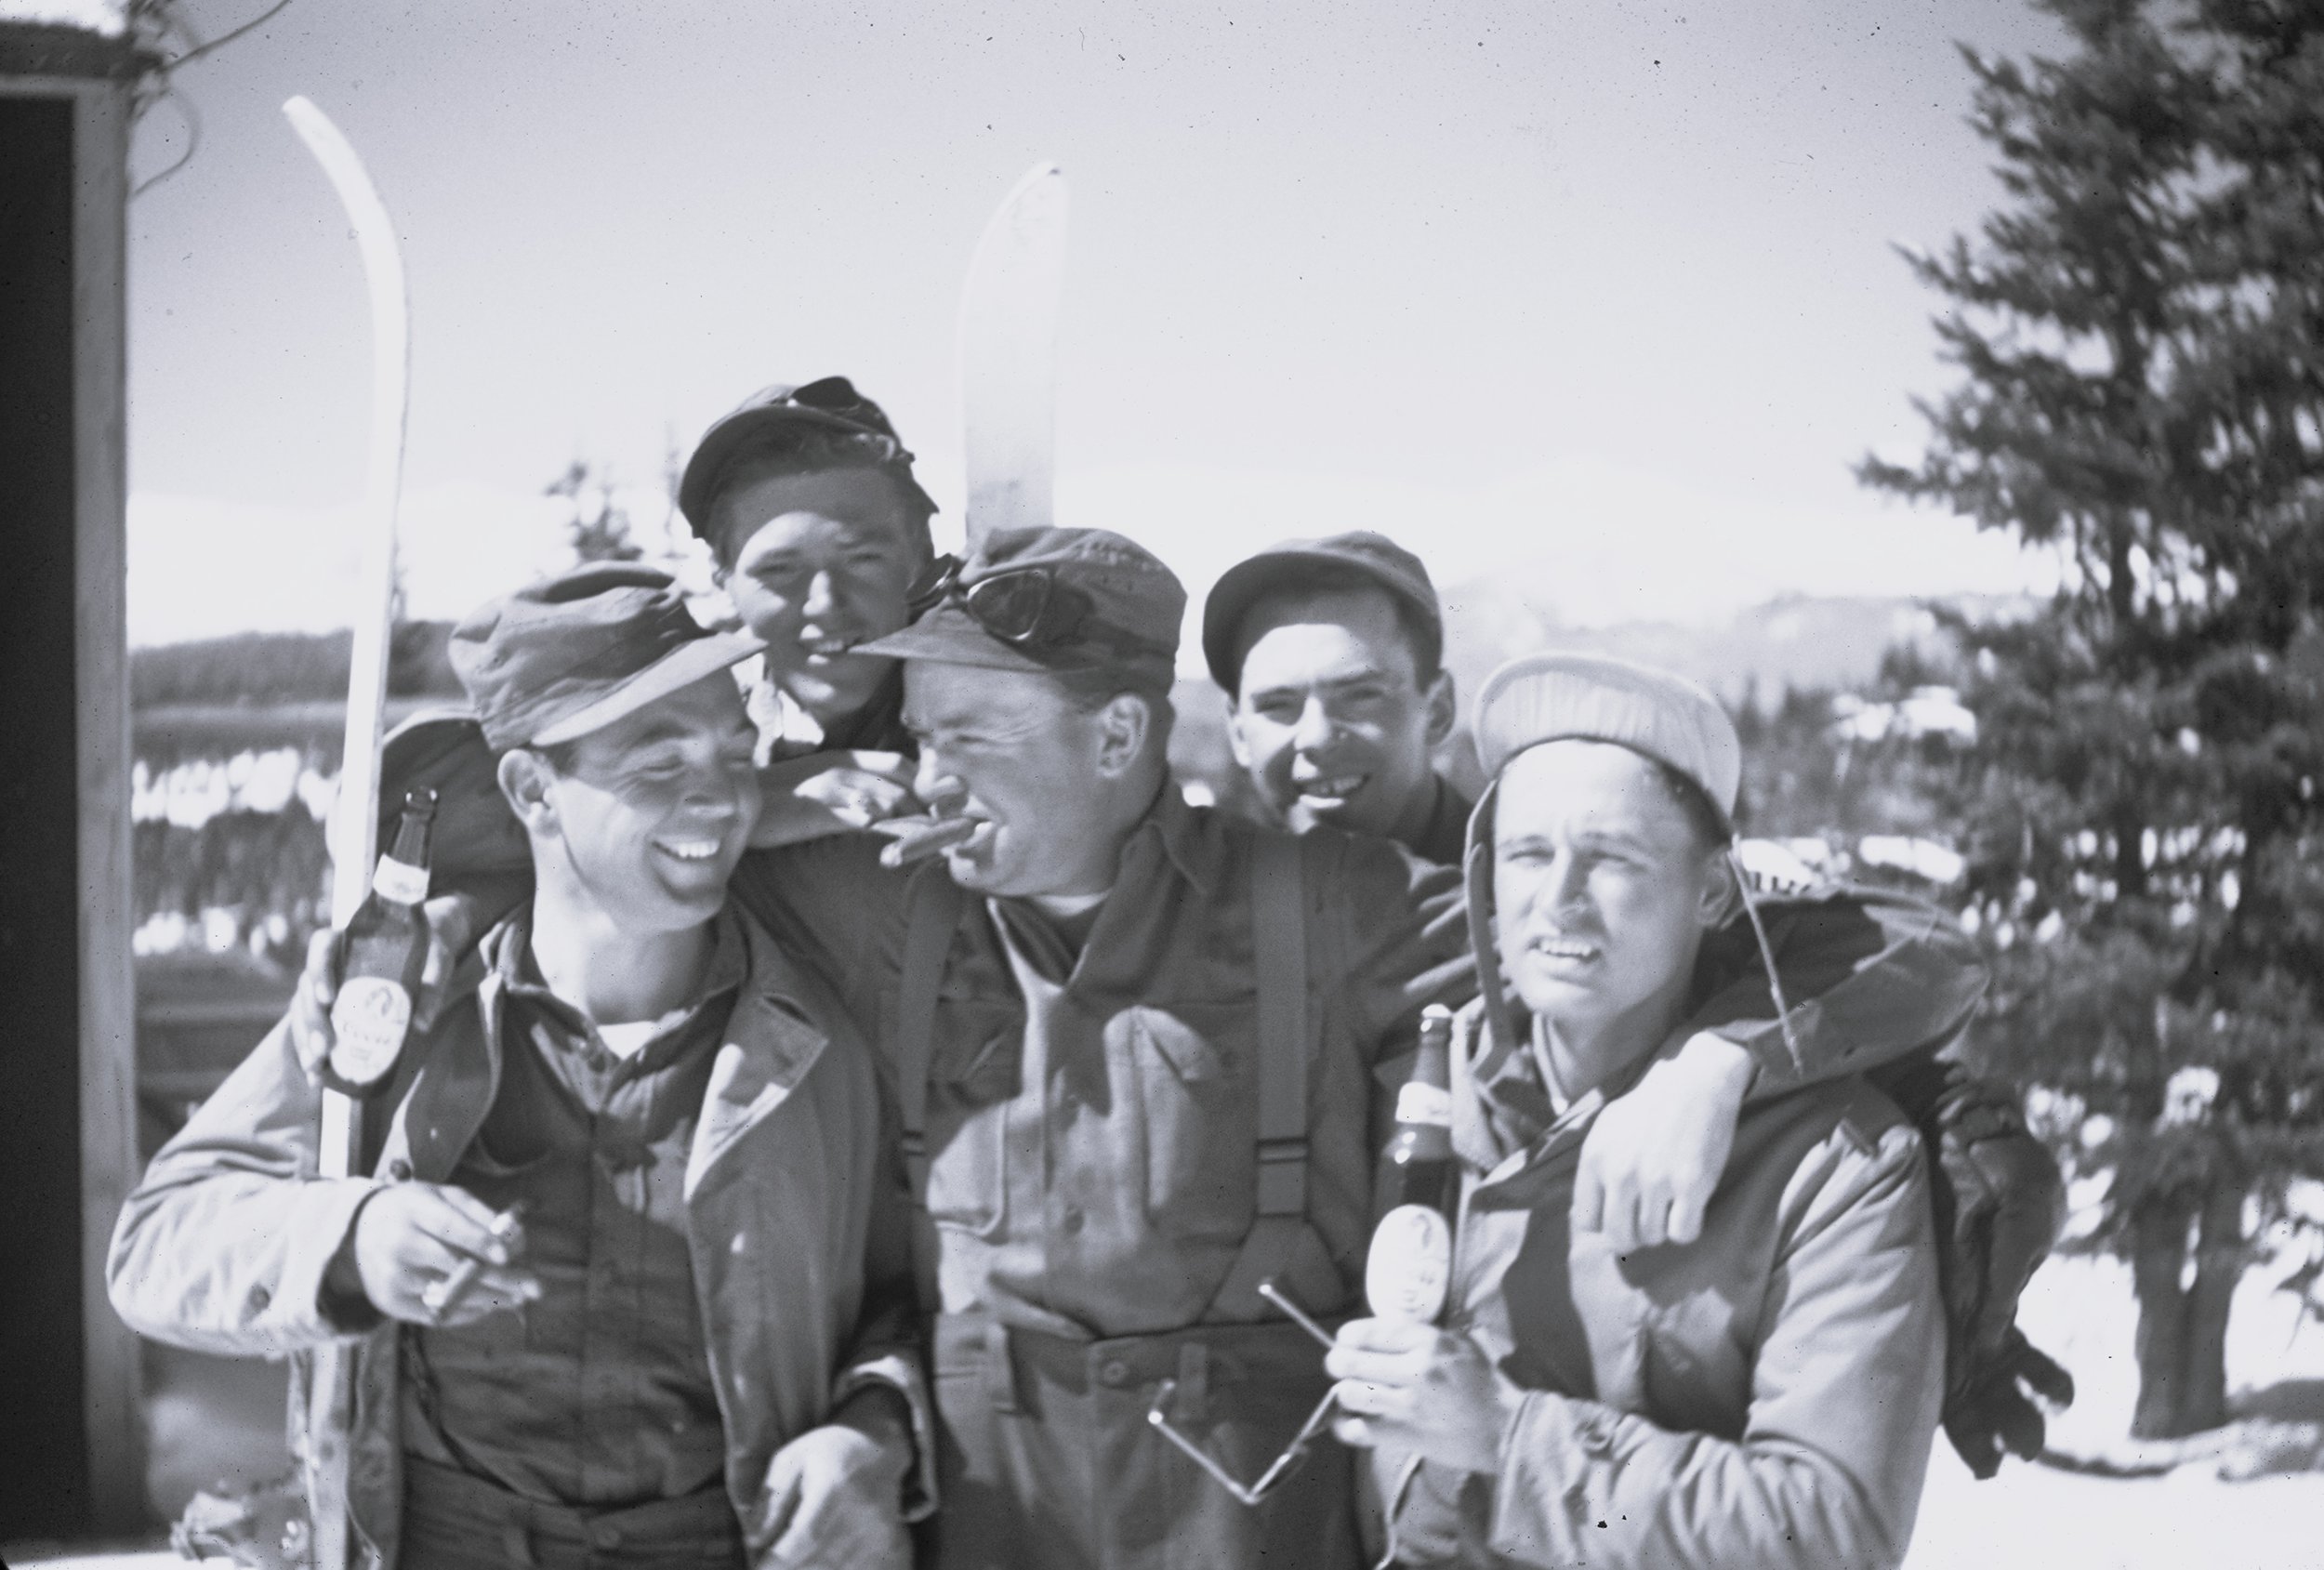 10th Mountain Division, circa 1940s. 